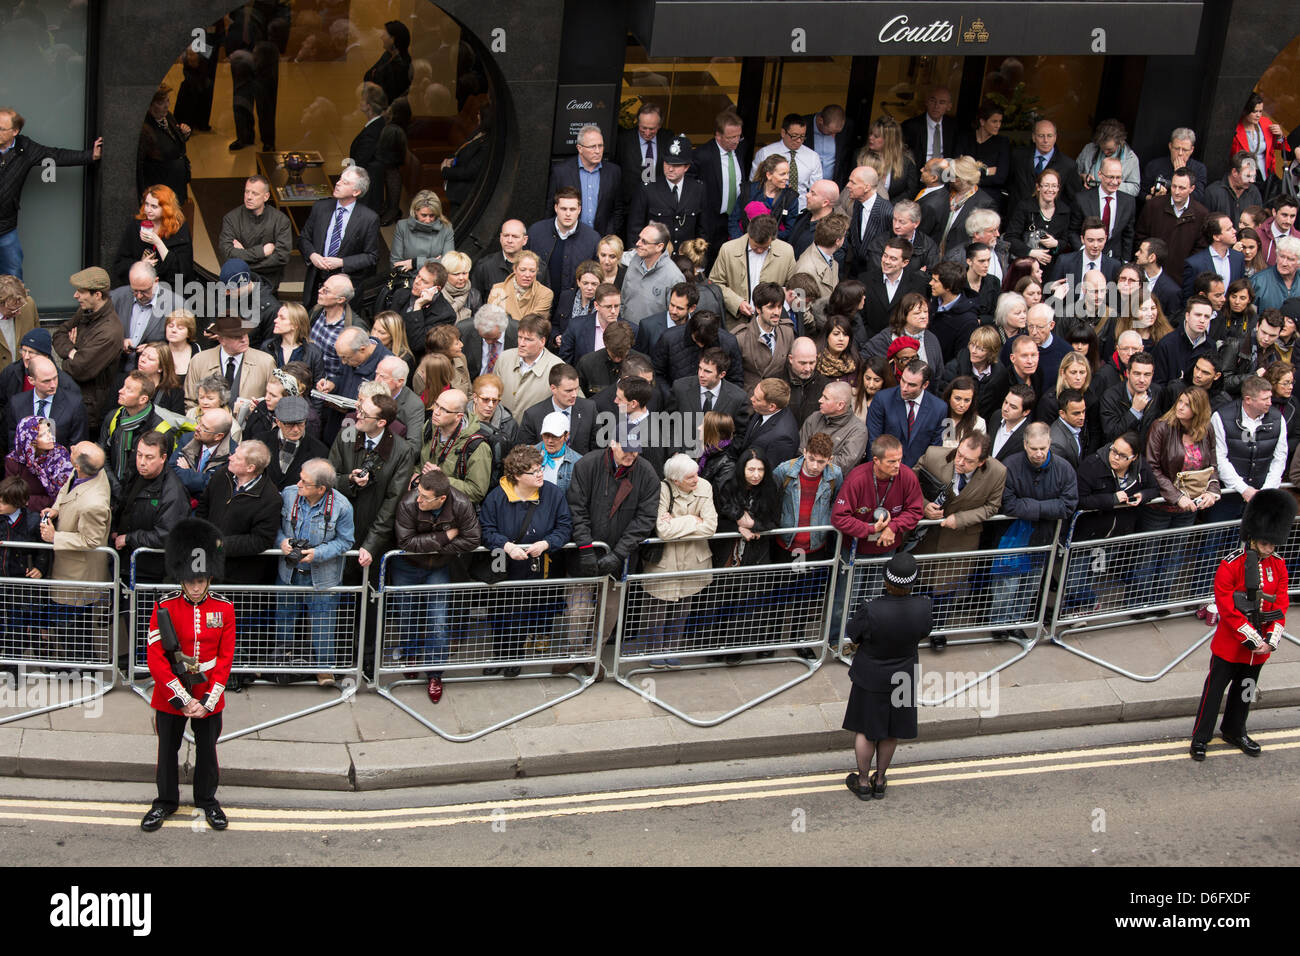 Londres, Reino Unido, 17 de abril de 2013. Las multitudes se reúnen fuera de Coutts Bank en Fleet Street, a la espera de ver a Margaret Thatcher del ataúd adoptadas por la cureña de St Paul's Cathedral. Crédito: Foto de stock